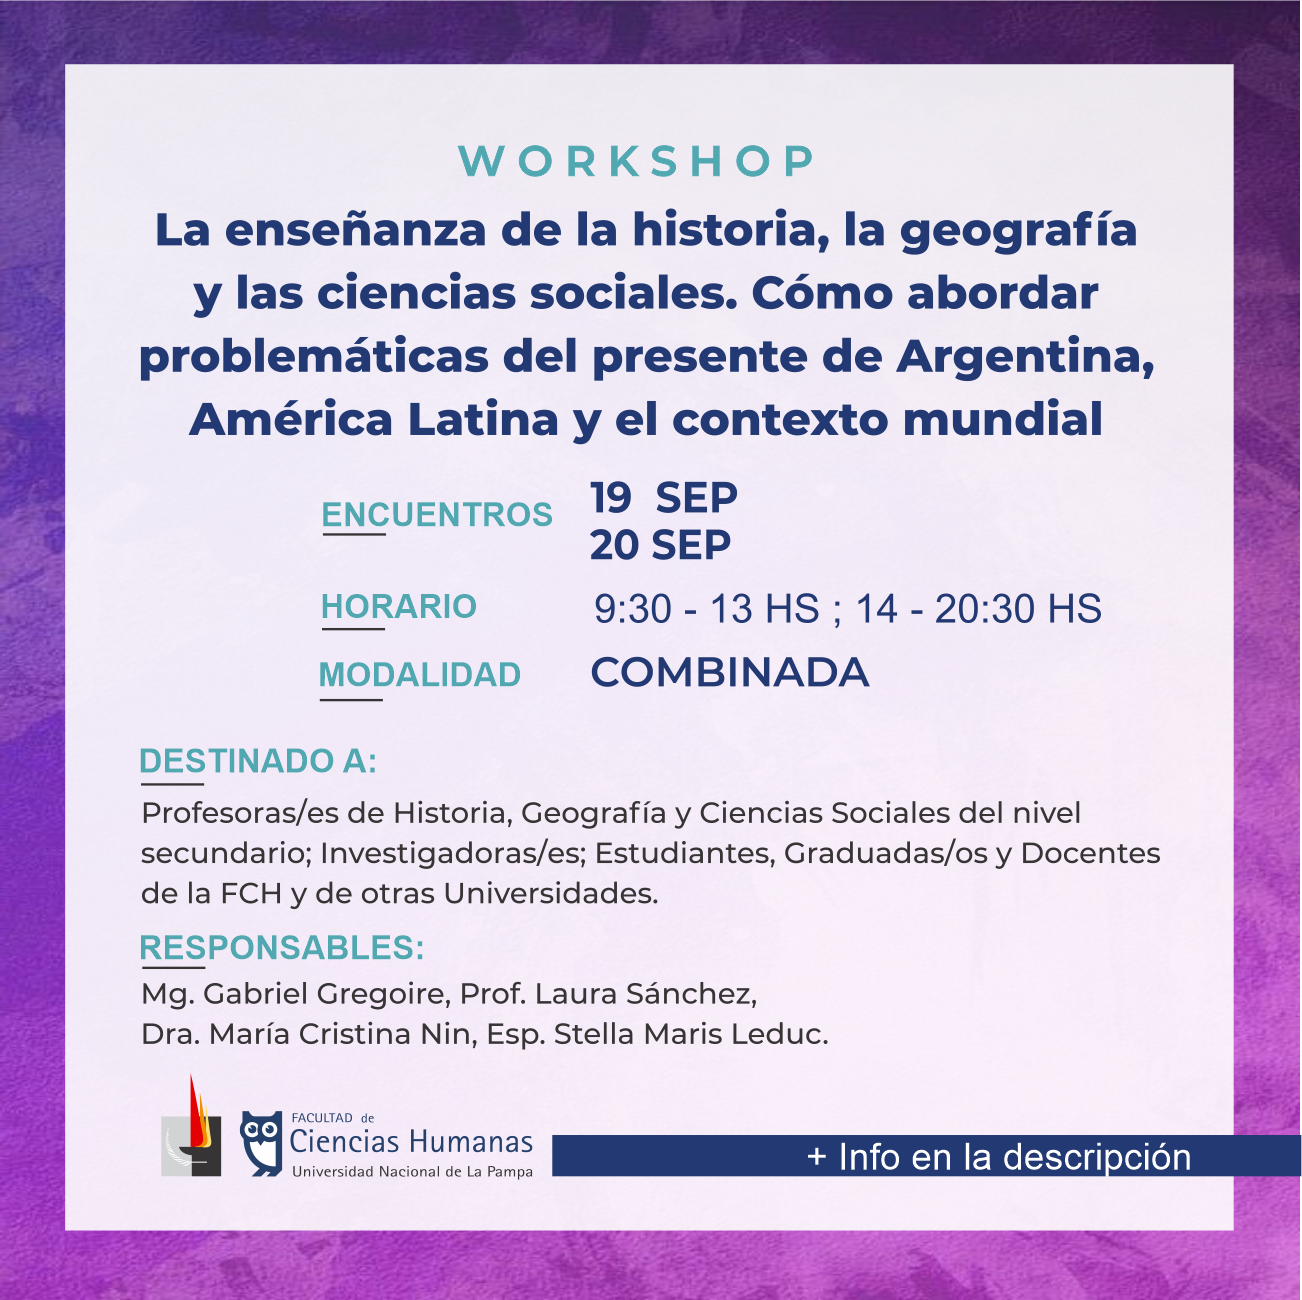 Workshop: La enseñanza de la historia, la geografía y las ciencias sociales. Cómo abordar problemáticas del presente de Argentina, América Latina y el contexto mundial